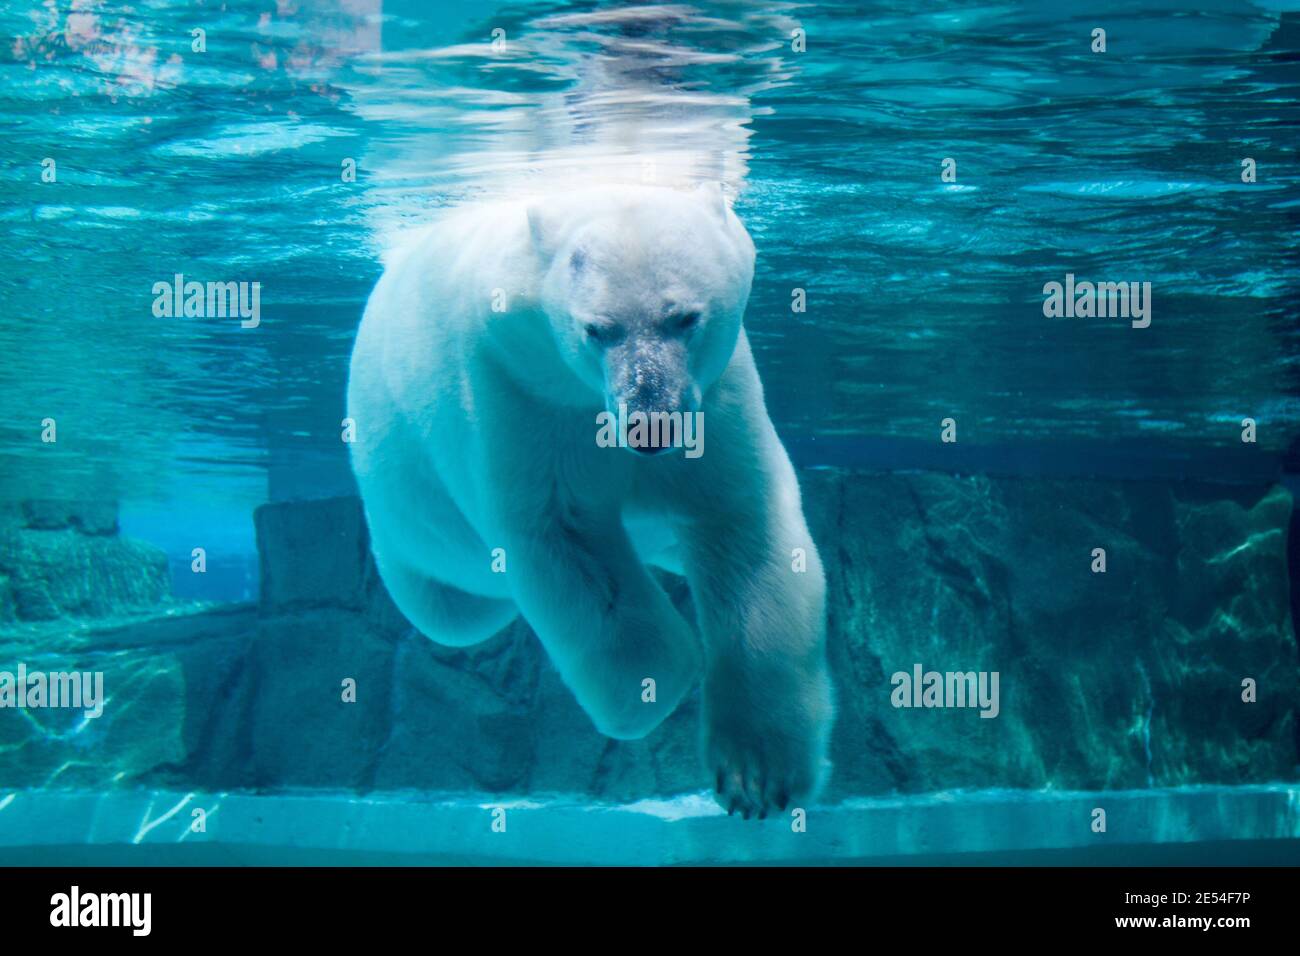 Anana, il resident femmina orso polare del Lincoln Park Zoo di Chicago, nuota sott'acqua in un caldo giorno d'estate. Foto Stock